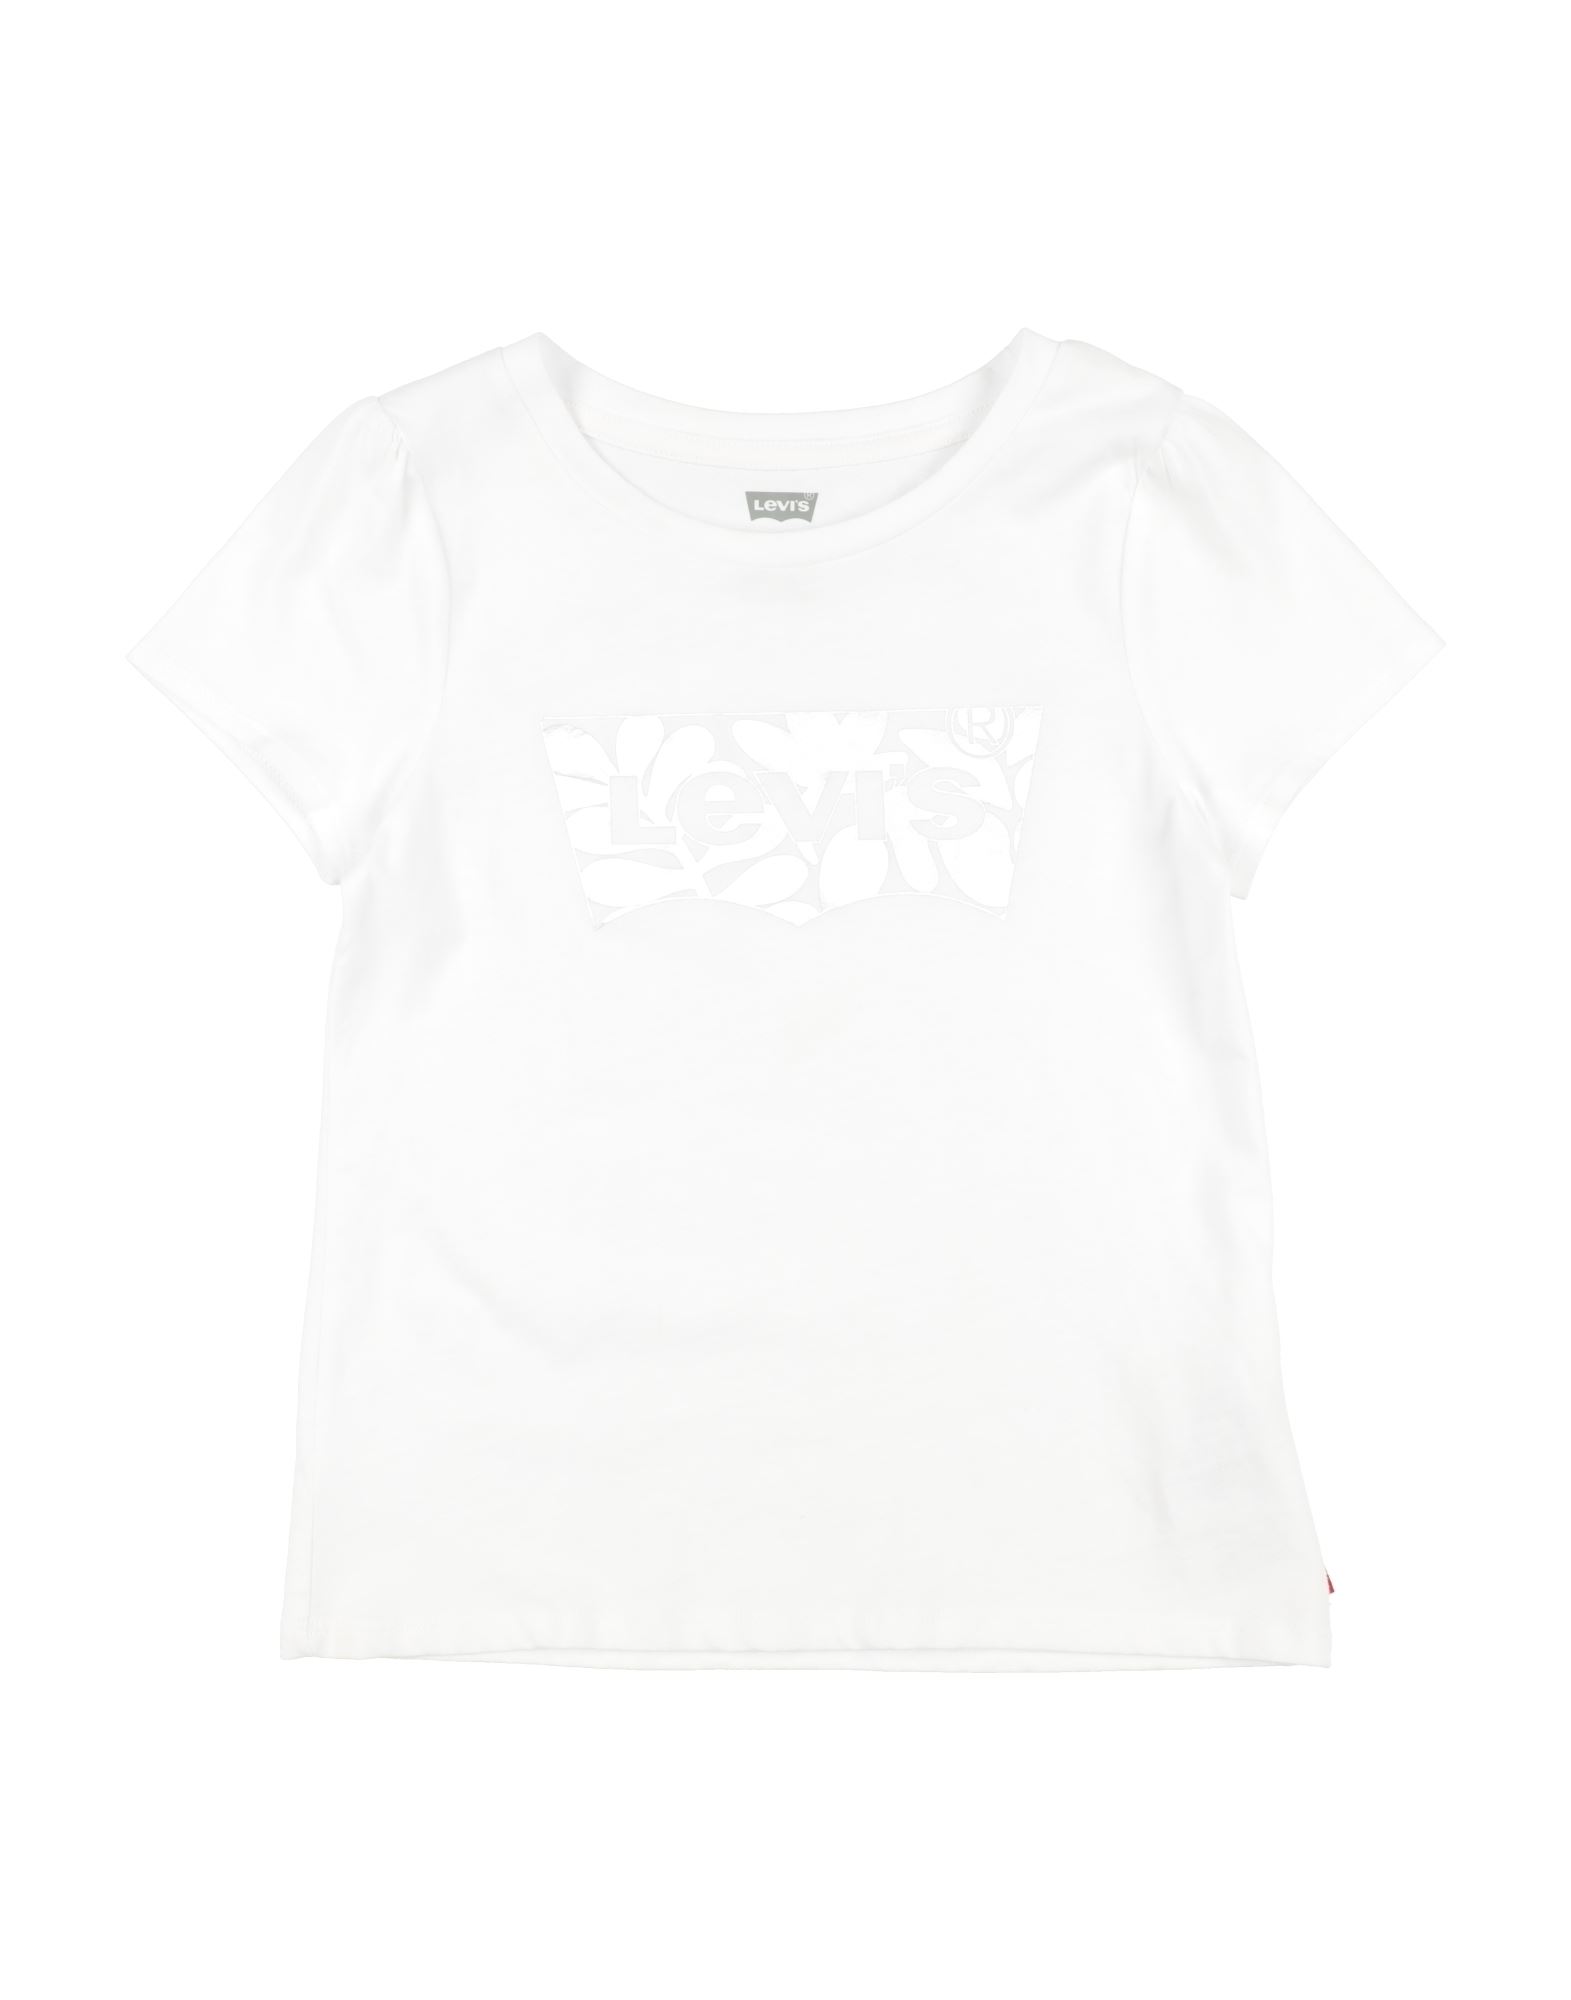 LEVI'S T-shirts Kinder Weiß von LEVI'S